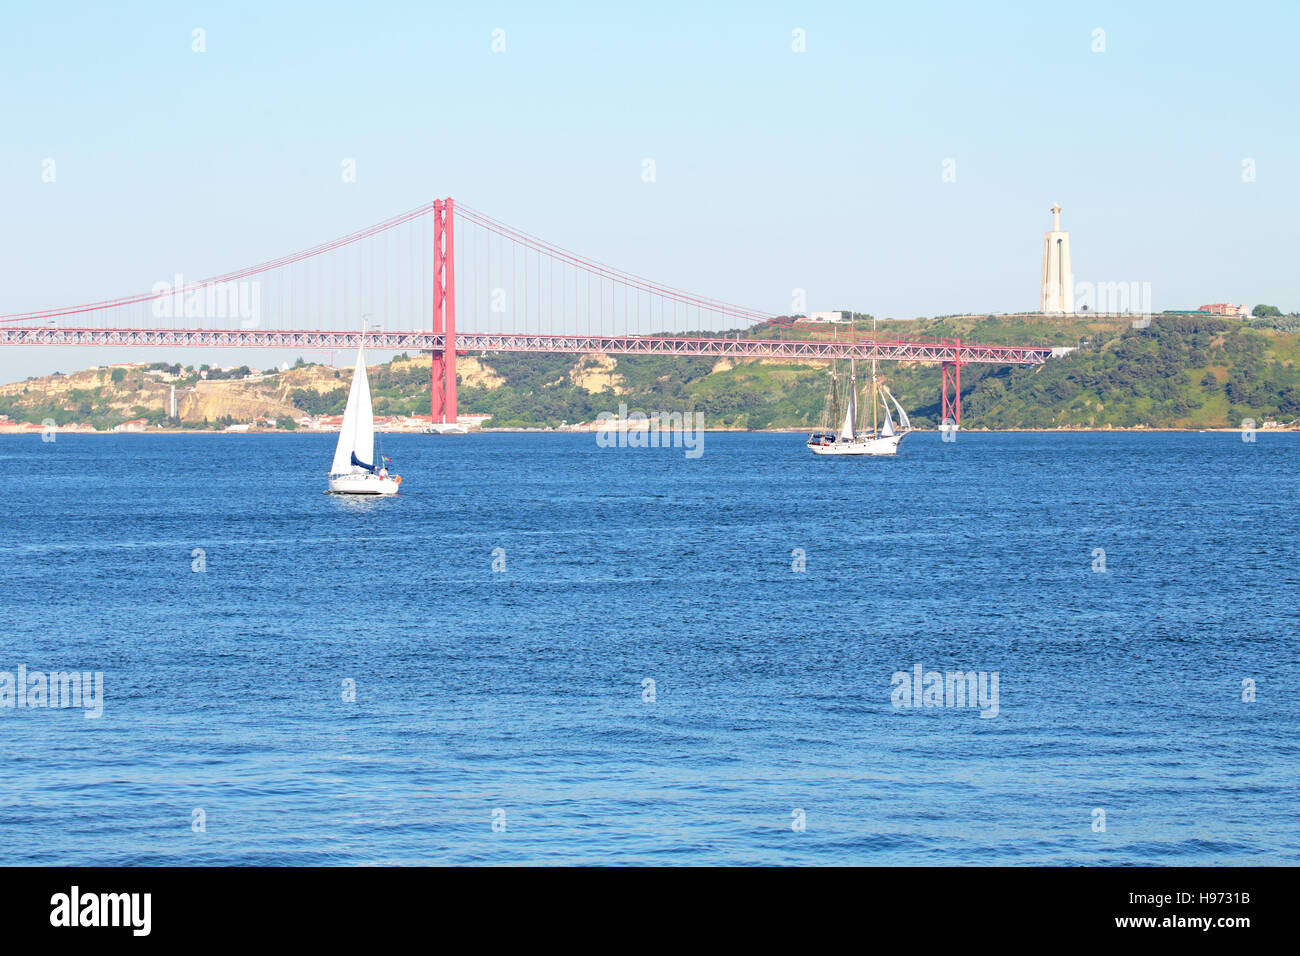 Barca a vela sul fiume Tago con il Ponte 25 Abril e Christo Rei in Lisbona Portogallo Foto Stock